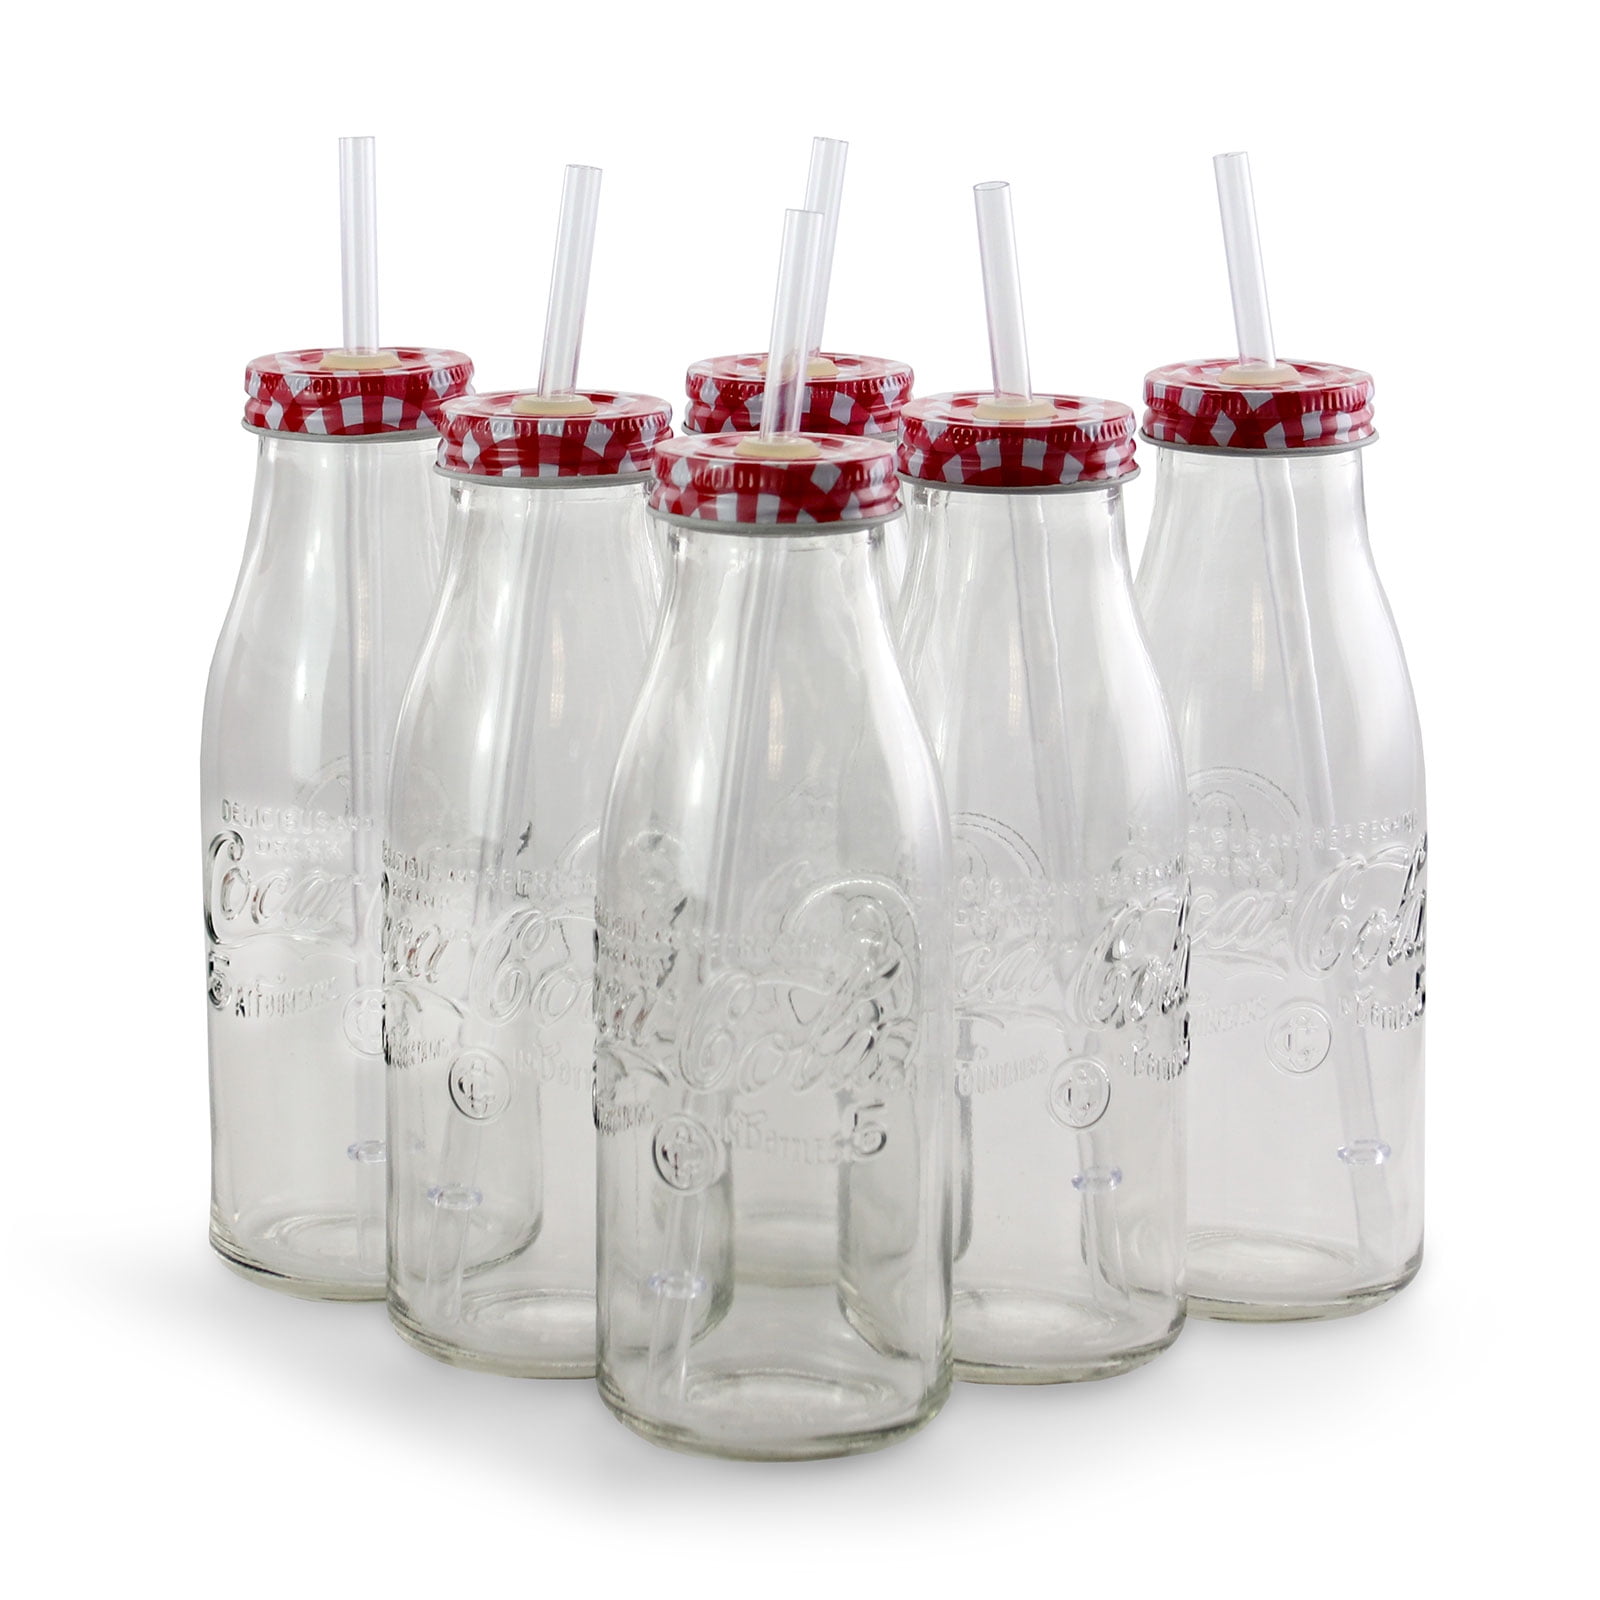 Glass Bottle RARE Kith x Coca Cola 8oz Super Limited 1 